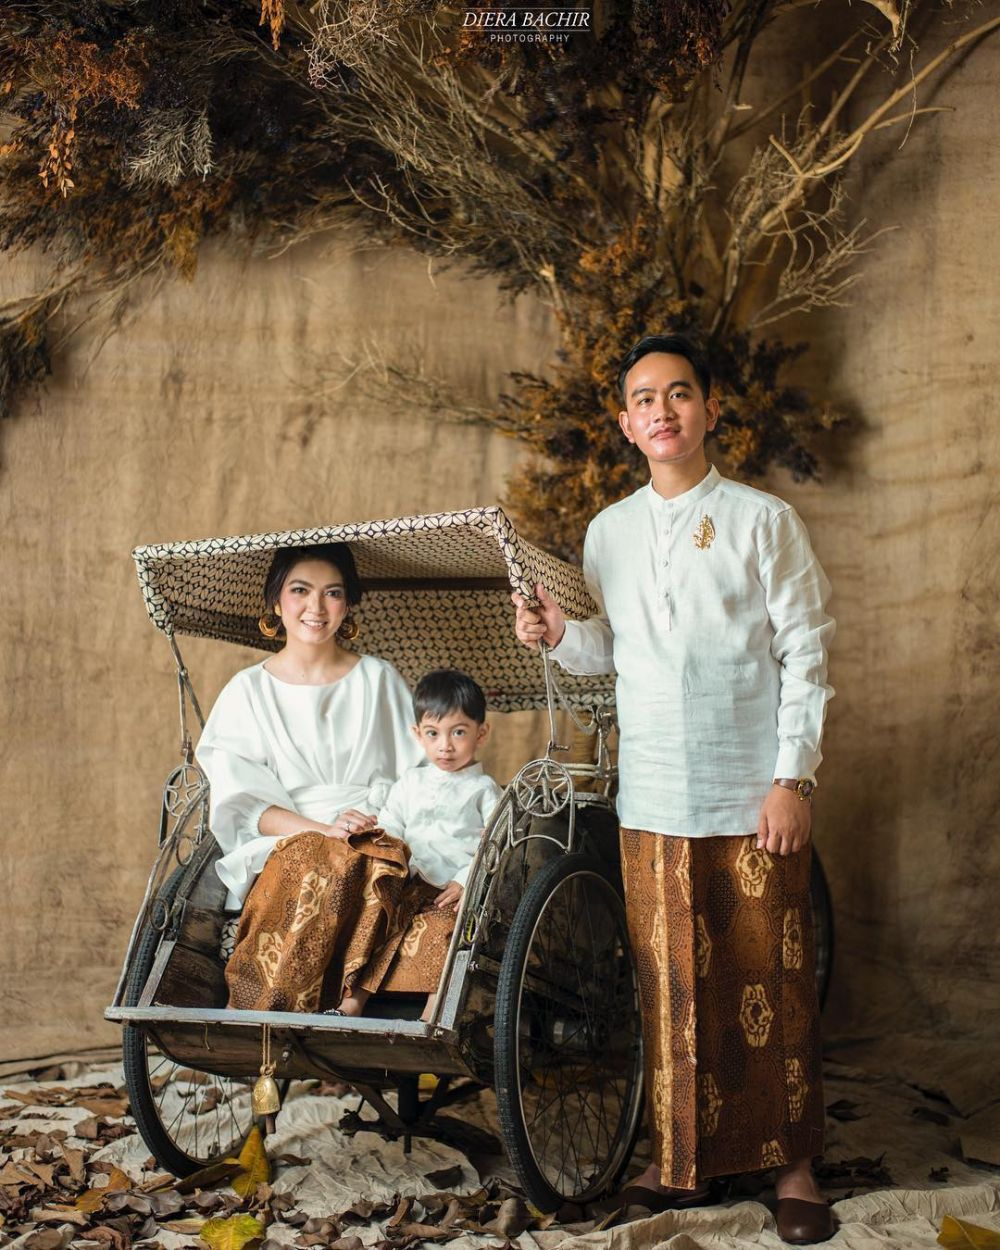 8 Potret Jan Ethes cucu Jokowi pakai kain etnik, polahnya gemesin